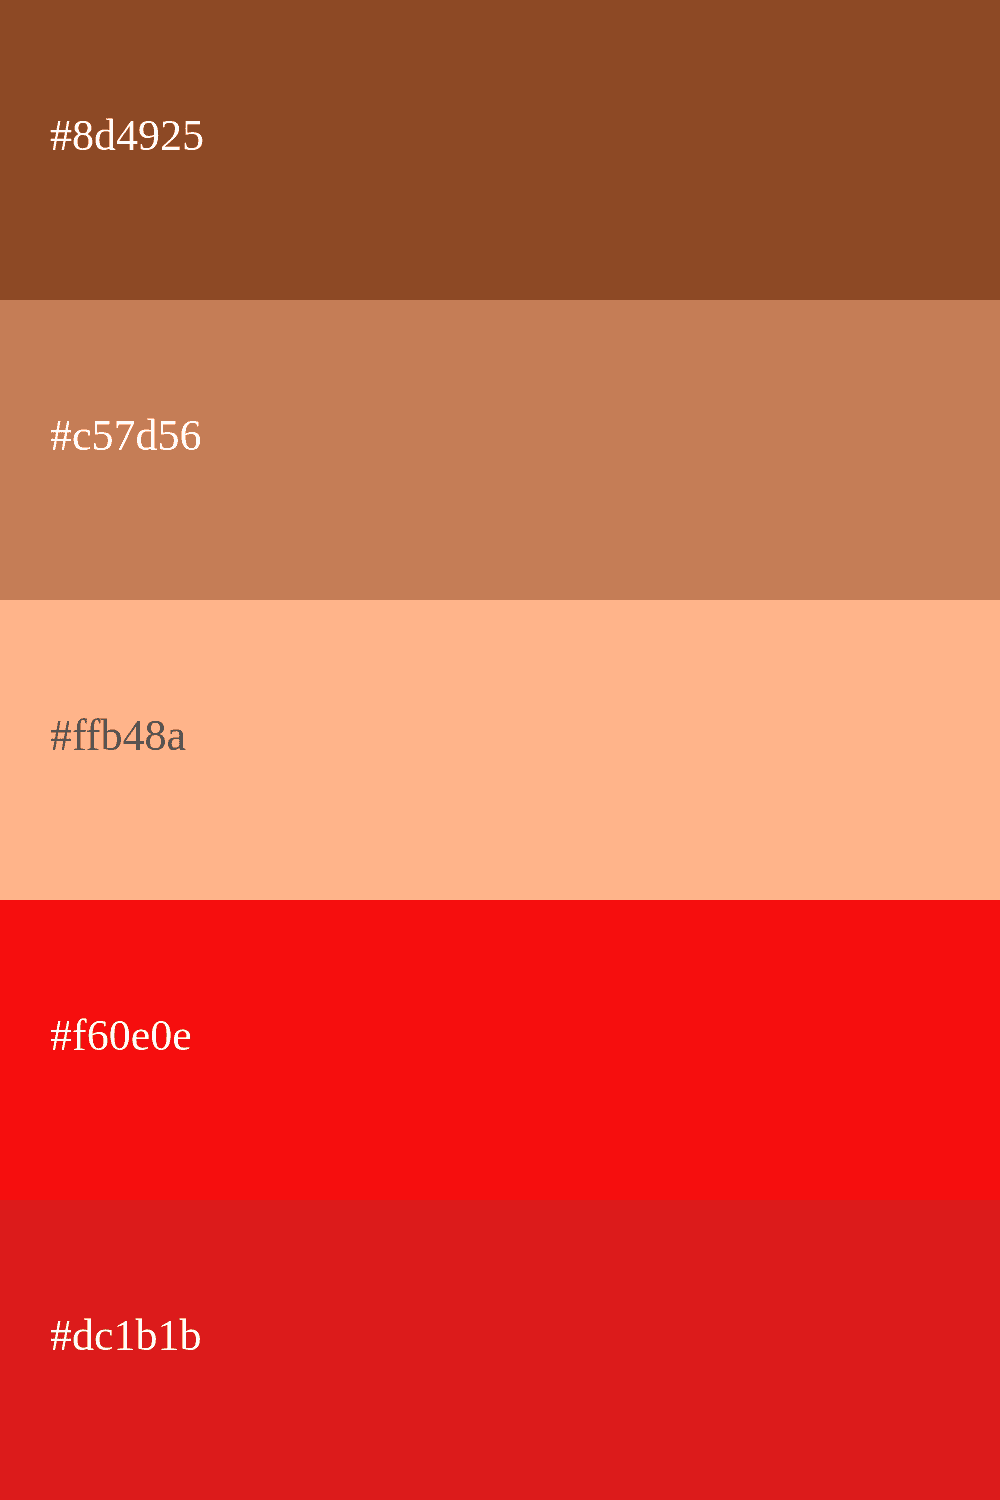 Paleta de colores marrón y rojo